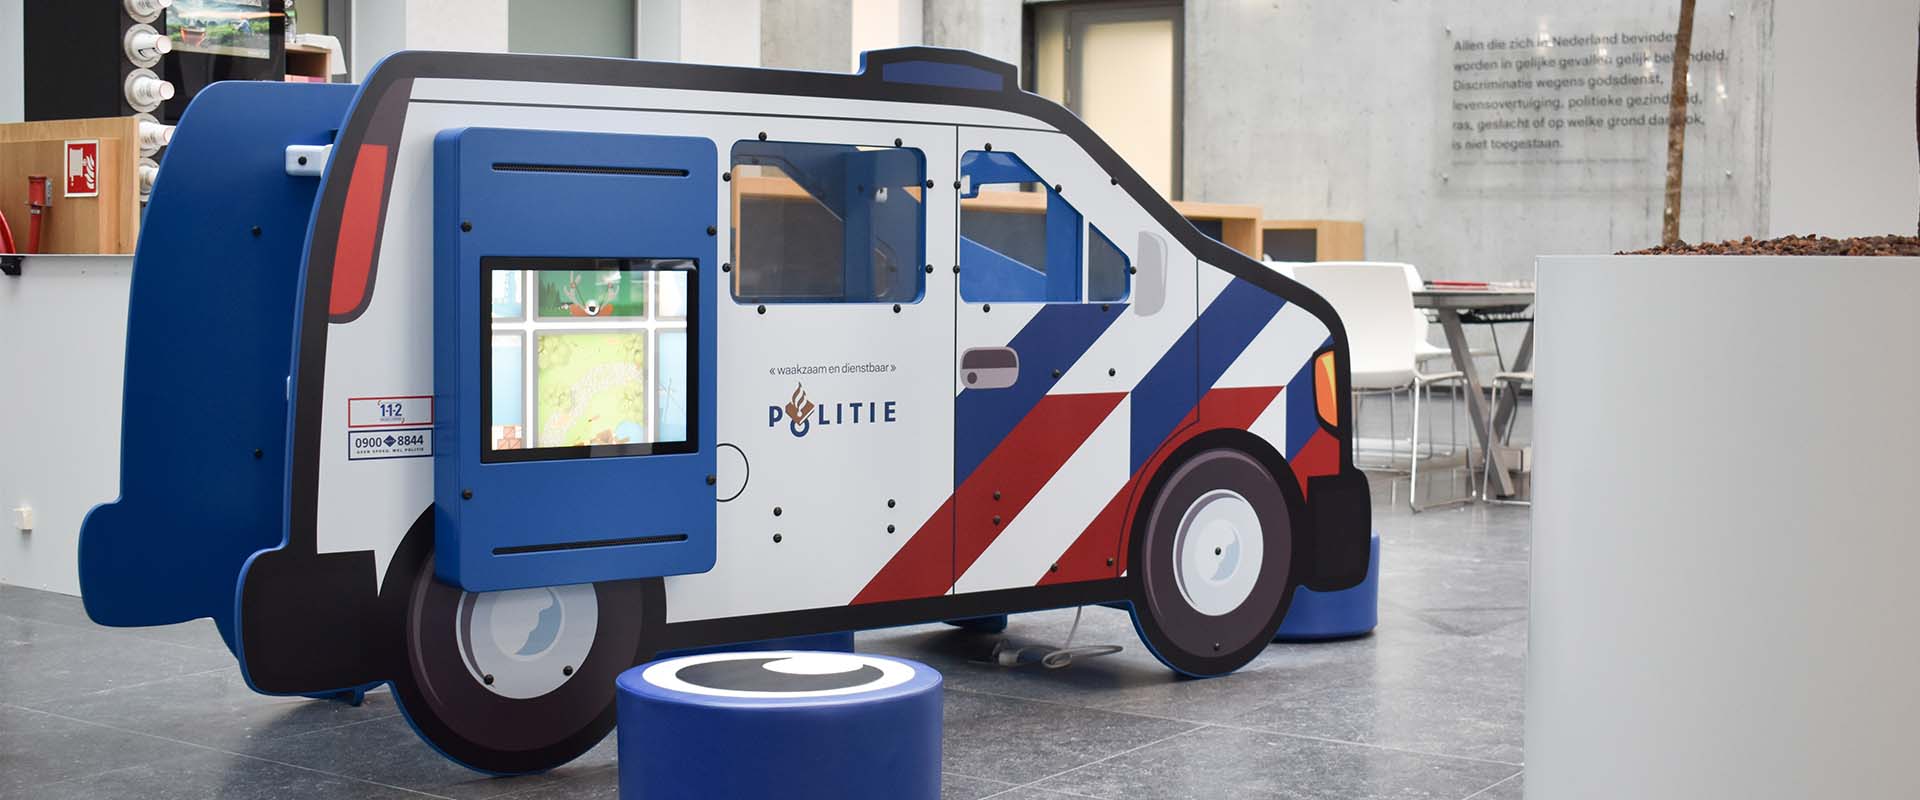 Politie Maastricht speelbus politiebus voor kinderen